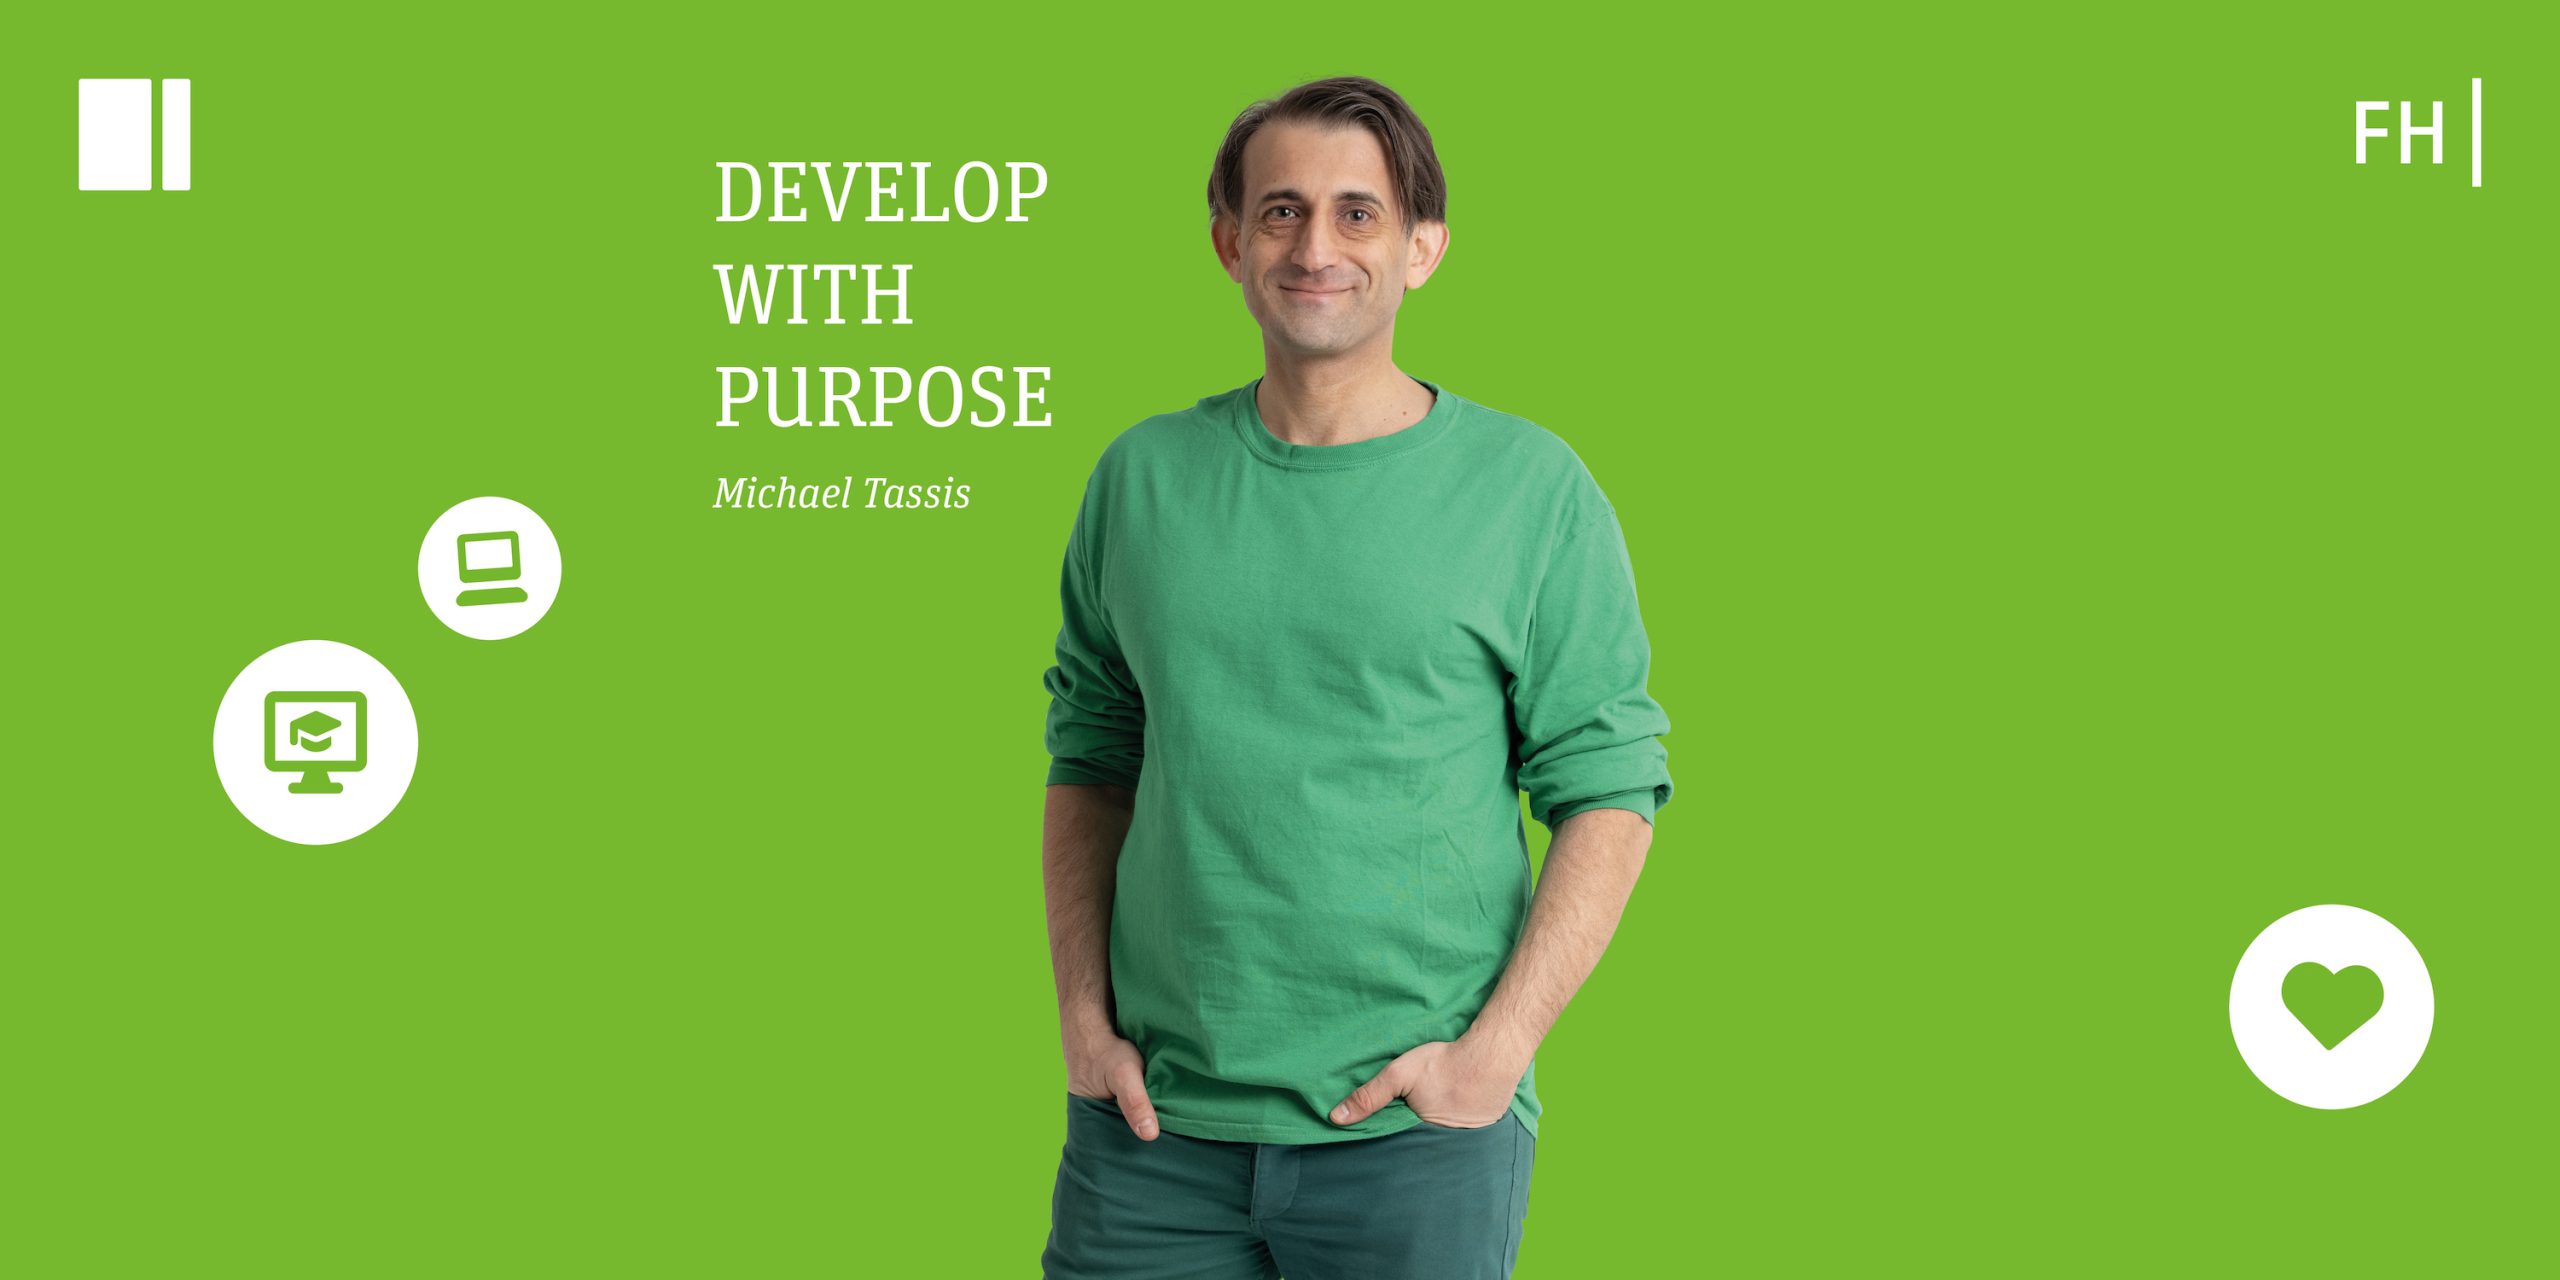 Michael Tassis vor grünem Hintergrund und dem Slogan "Develop with Purpose"